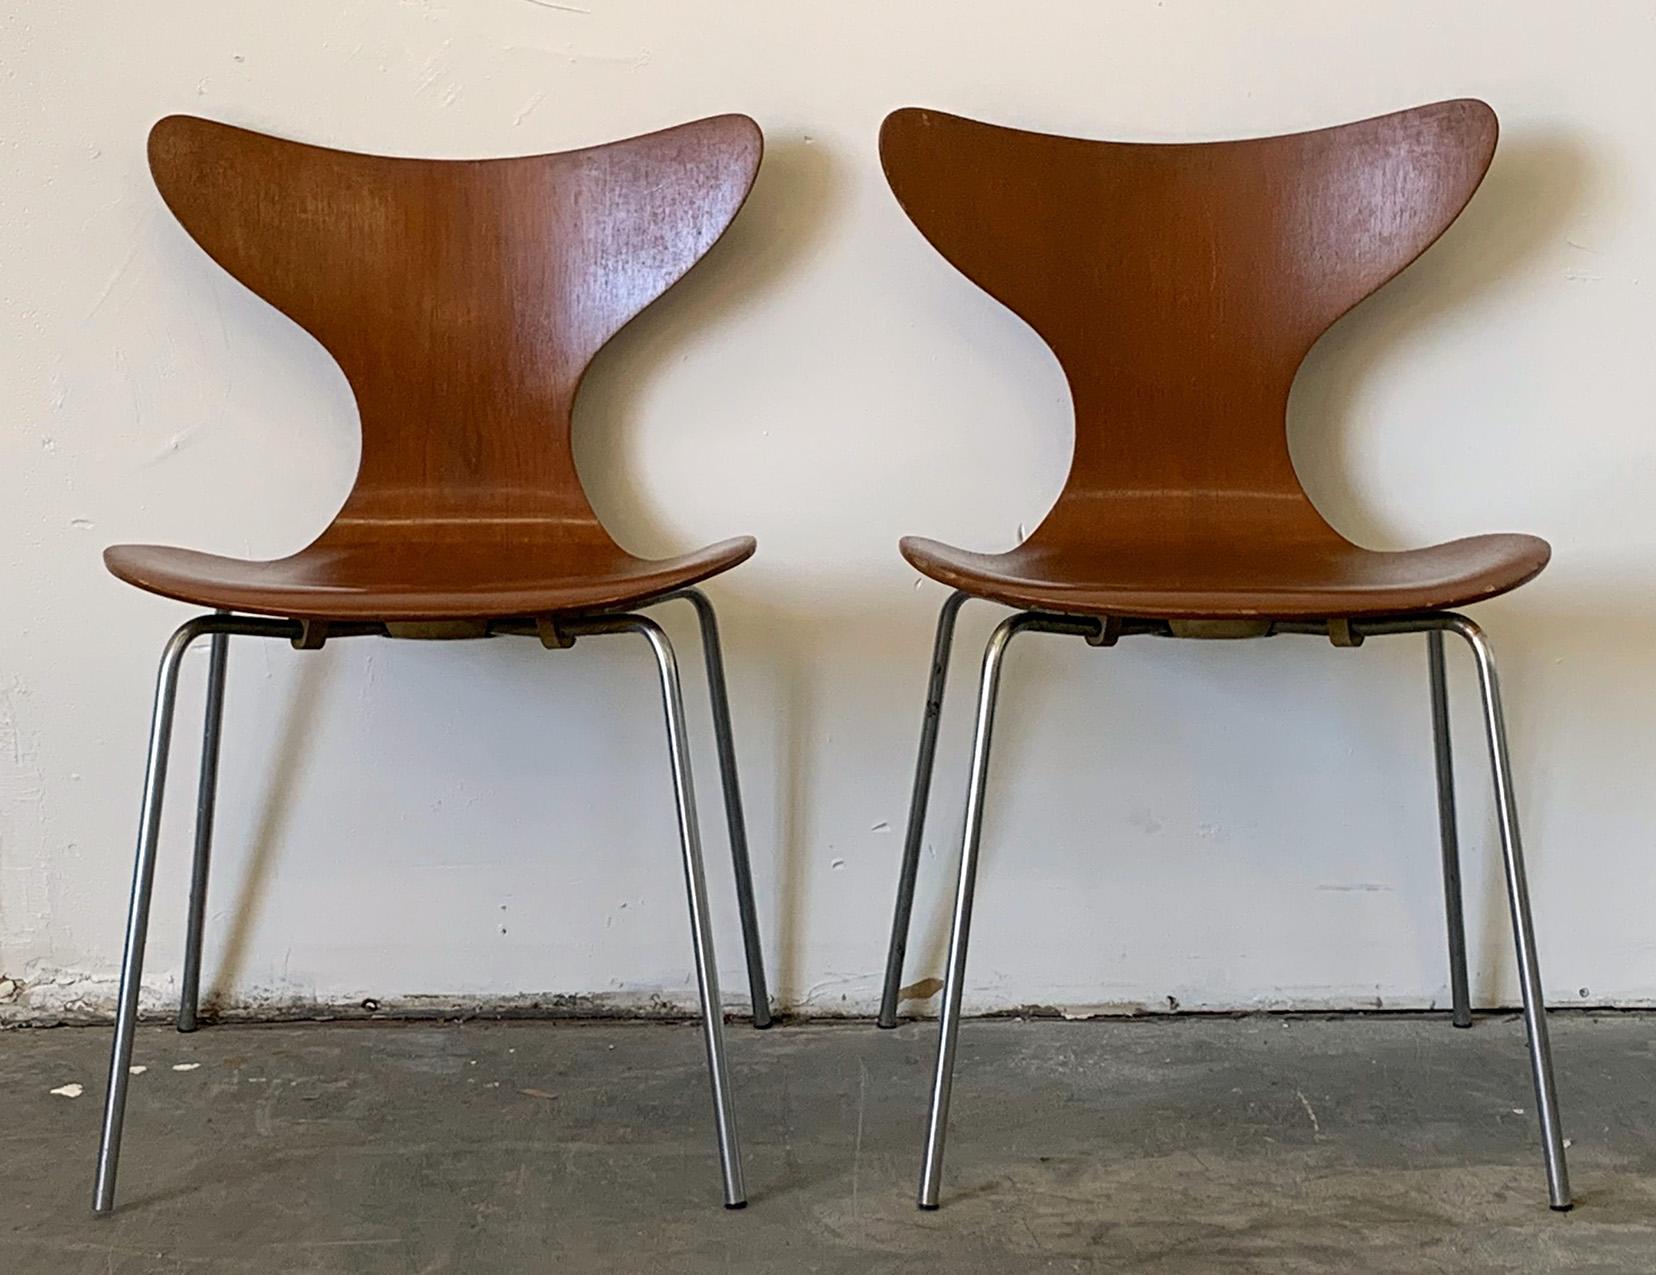 Une paire de chaises Lily d'Arne Jacobsen pour Fritz Hansen. Selon Danish Design Review:: la chaise lily:: magen ou sea gull a été présentée au salon du meuble scandinave de Copenhague en 1969. 

